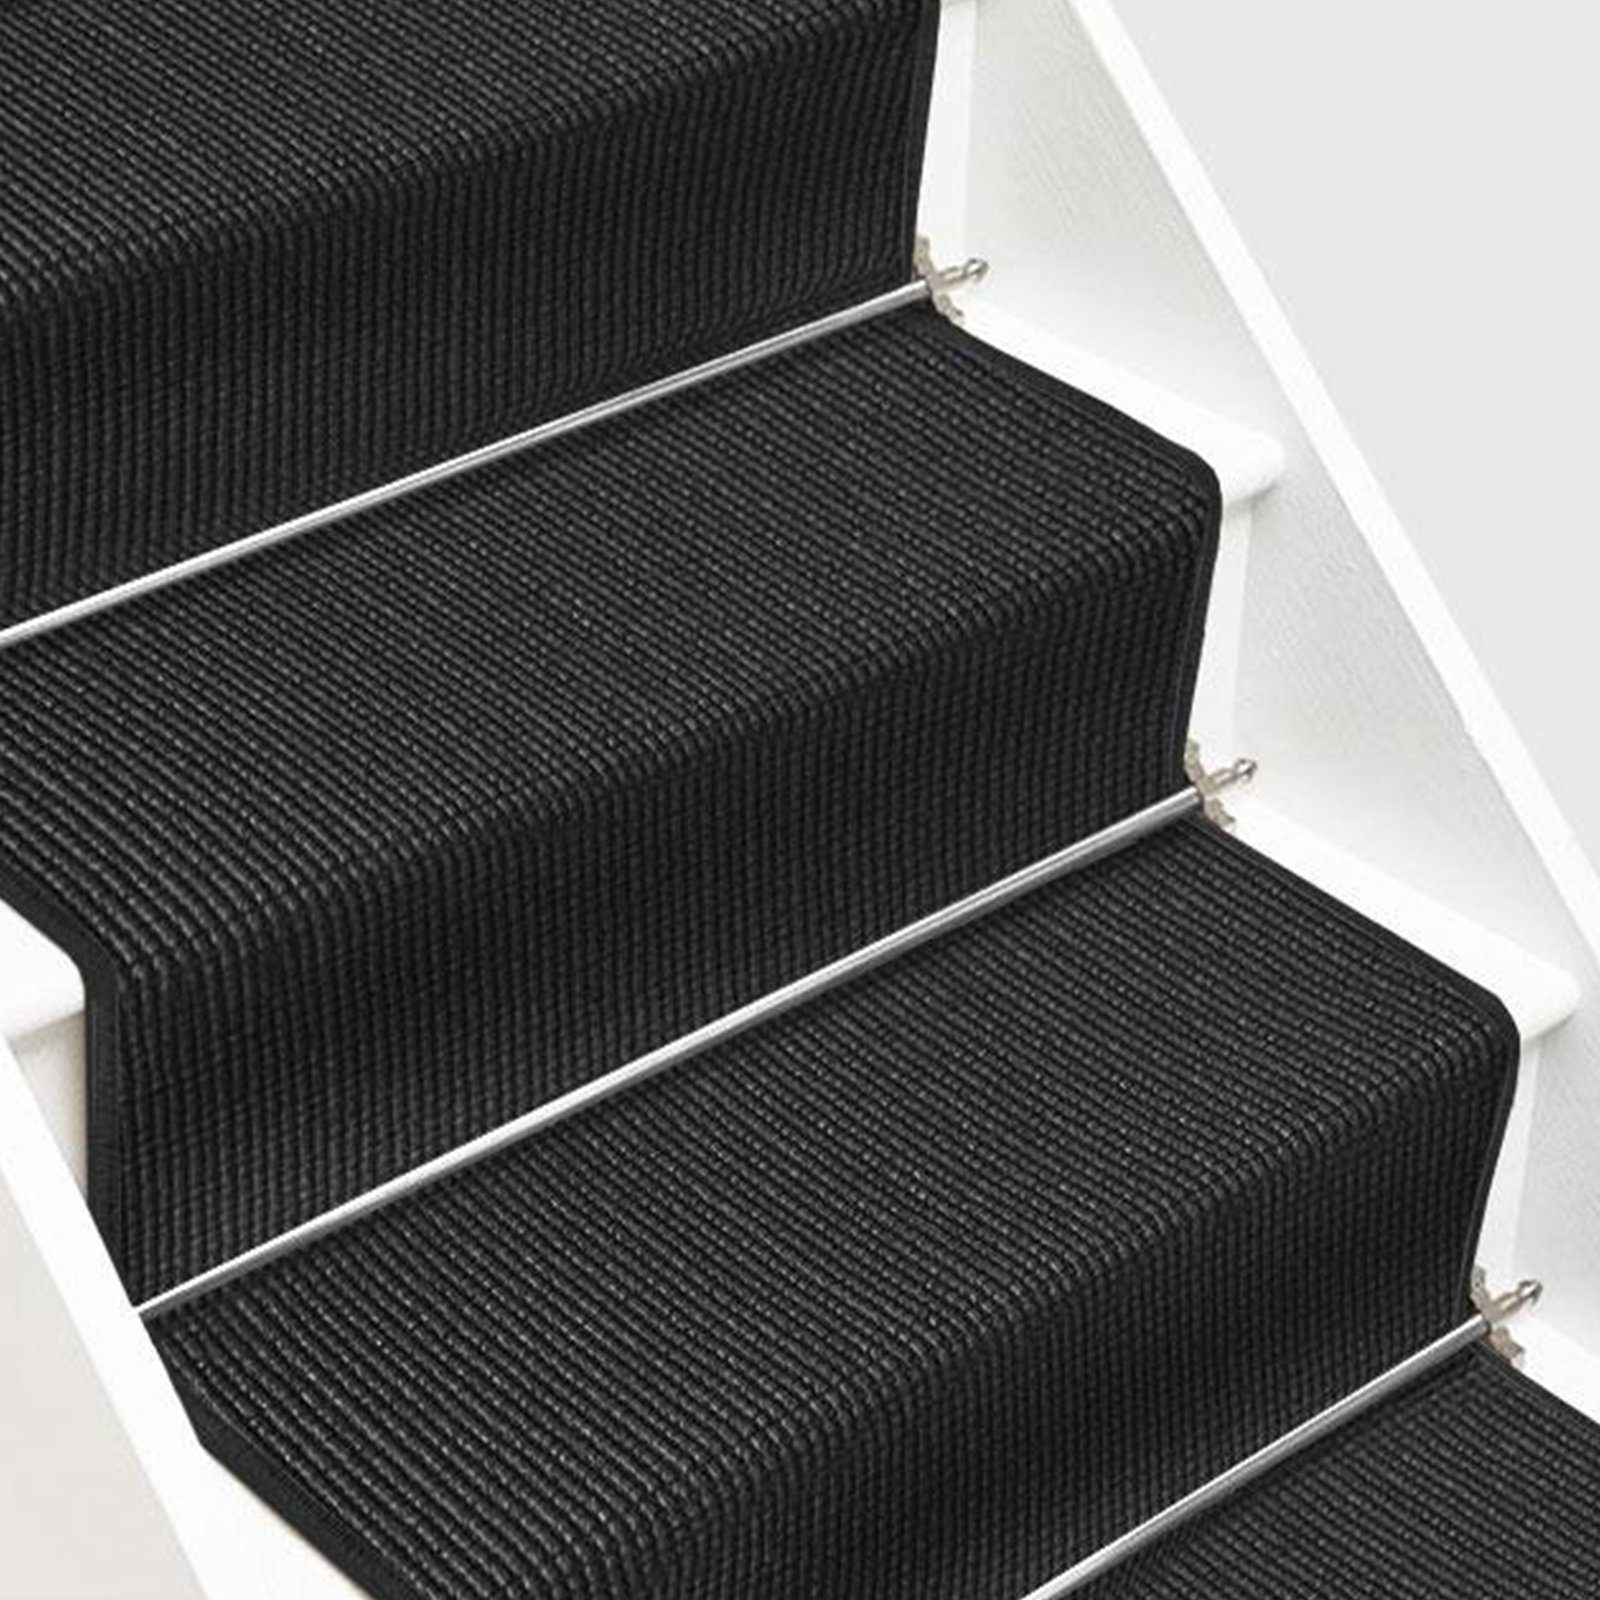 Sisalteppich Treppenteppich Sylt, Teppich erhältlich in 10 Farben & vielen Größen, Floordirekt, rechteckig